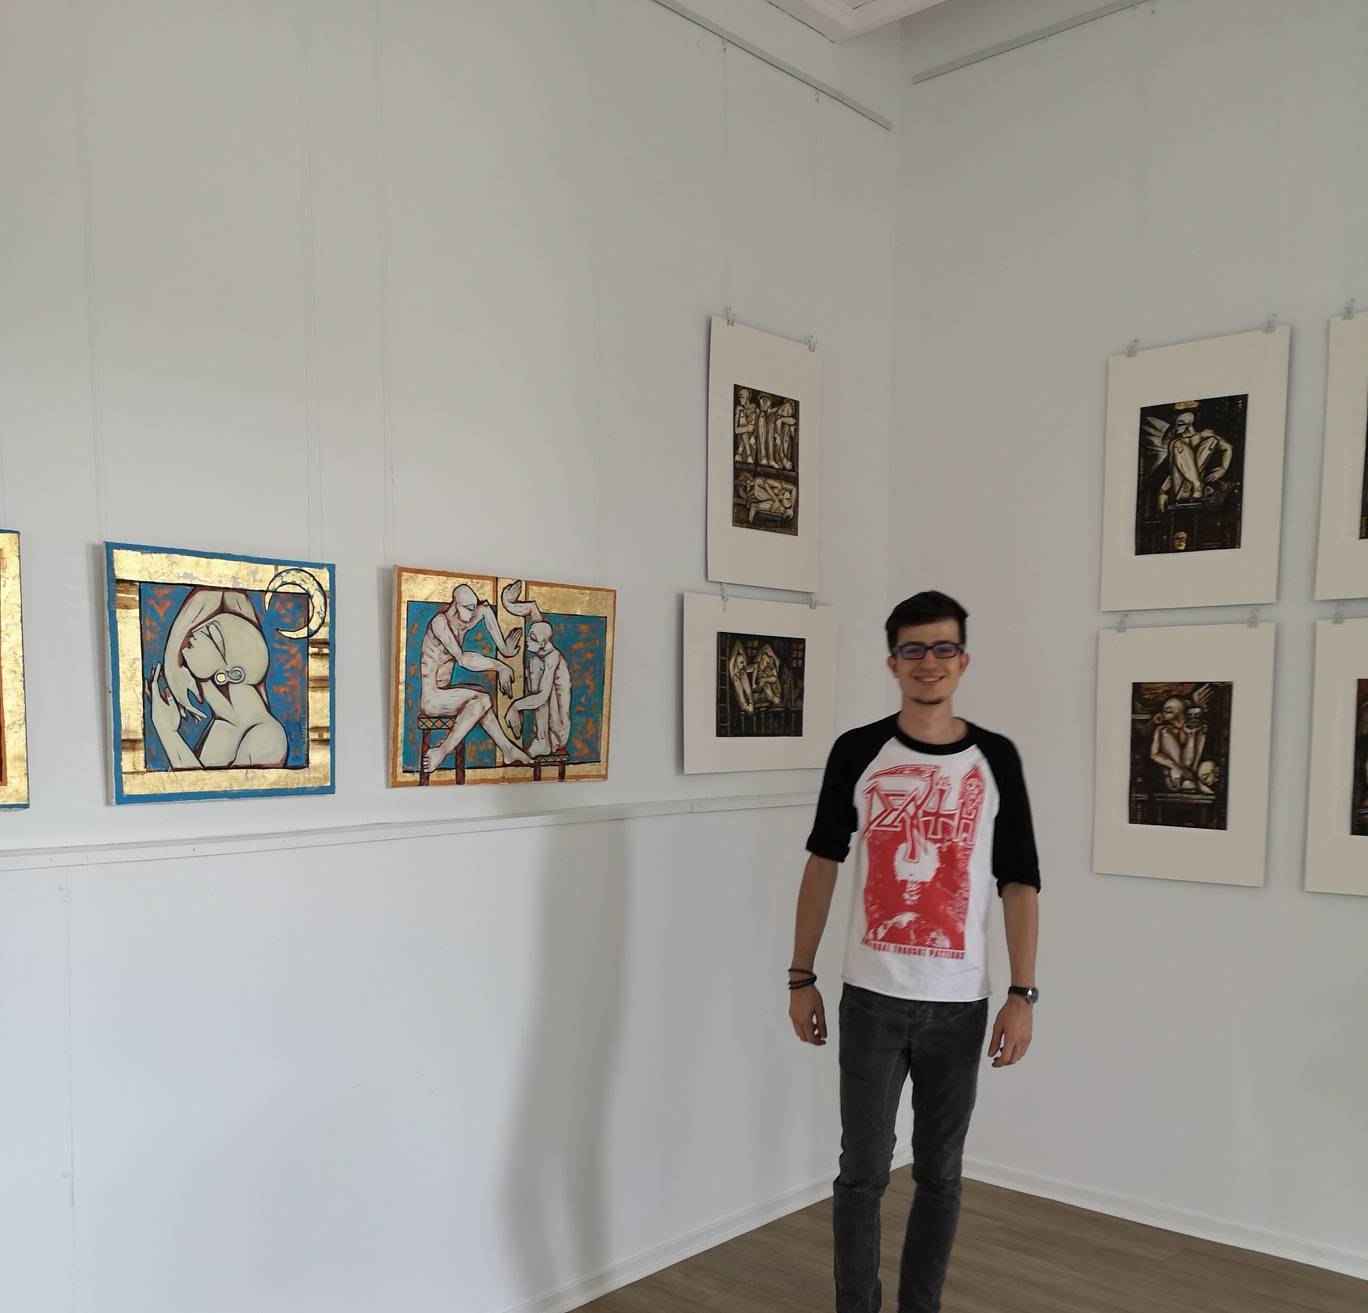  Amjad Al Safadi (Schwager des Künstlers Osama Youssef Omasha) liebt die Kunstwerke, die derzeit im Kunsthaus Hochdahl an der Dorfstraße gezeigt werden. 